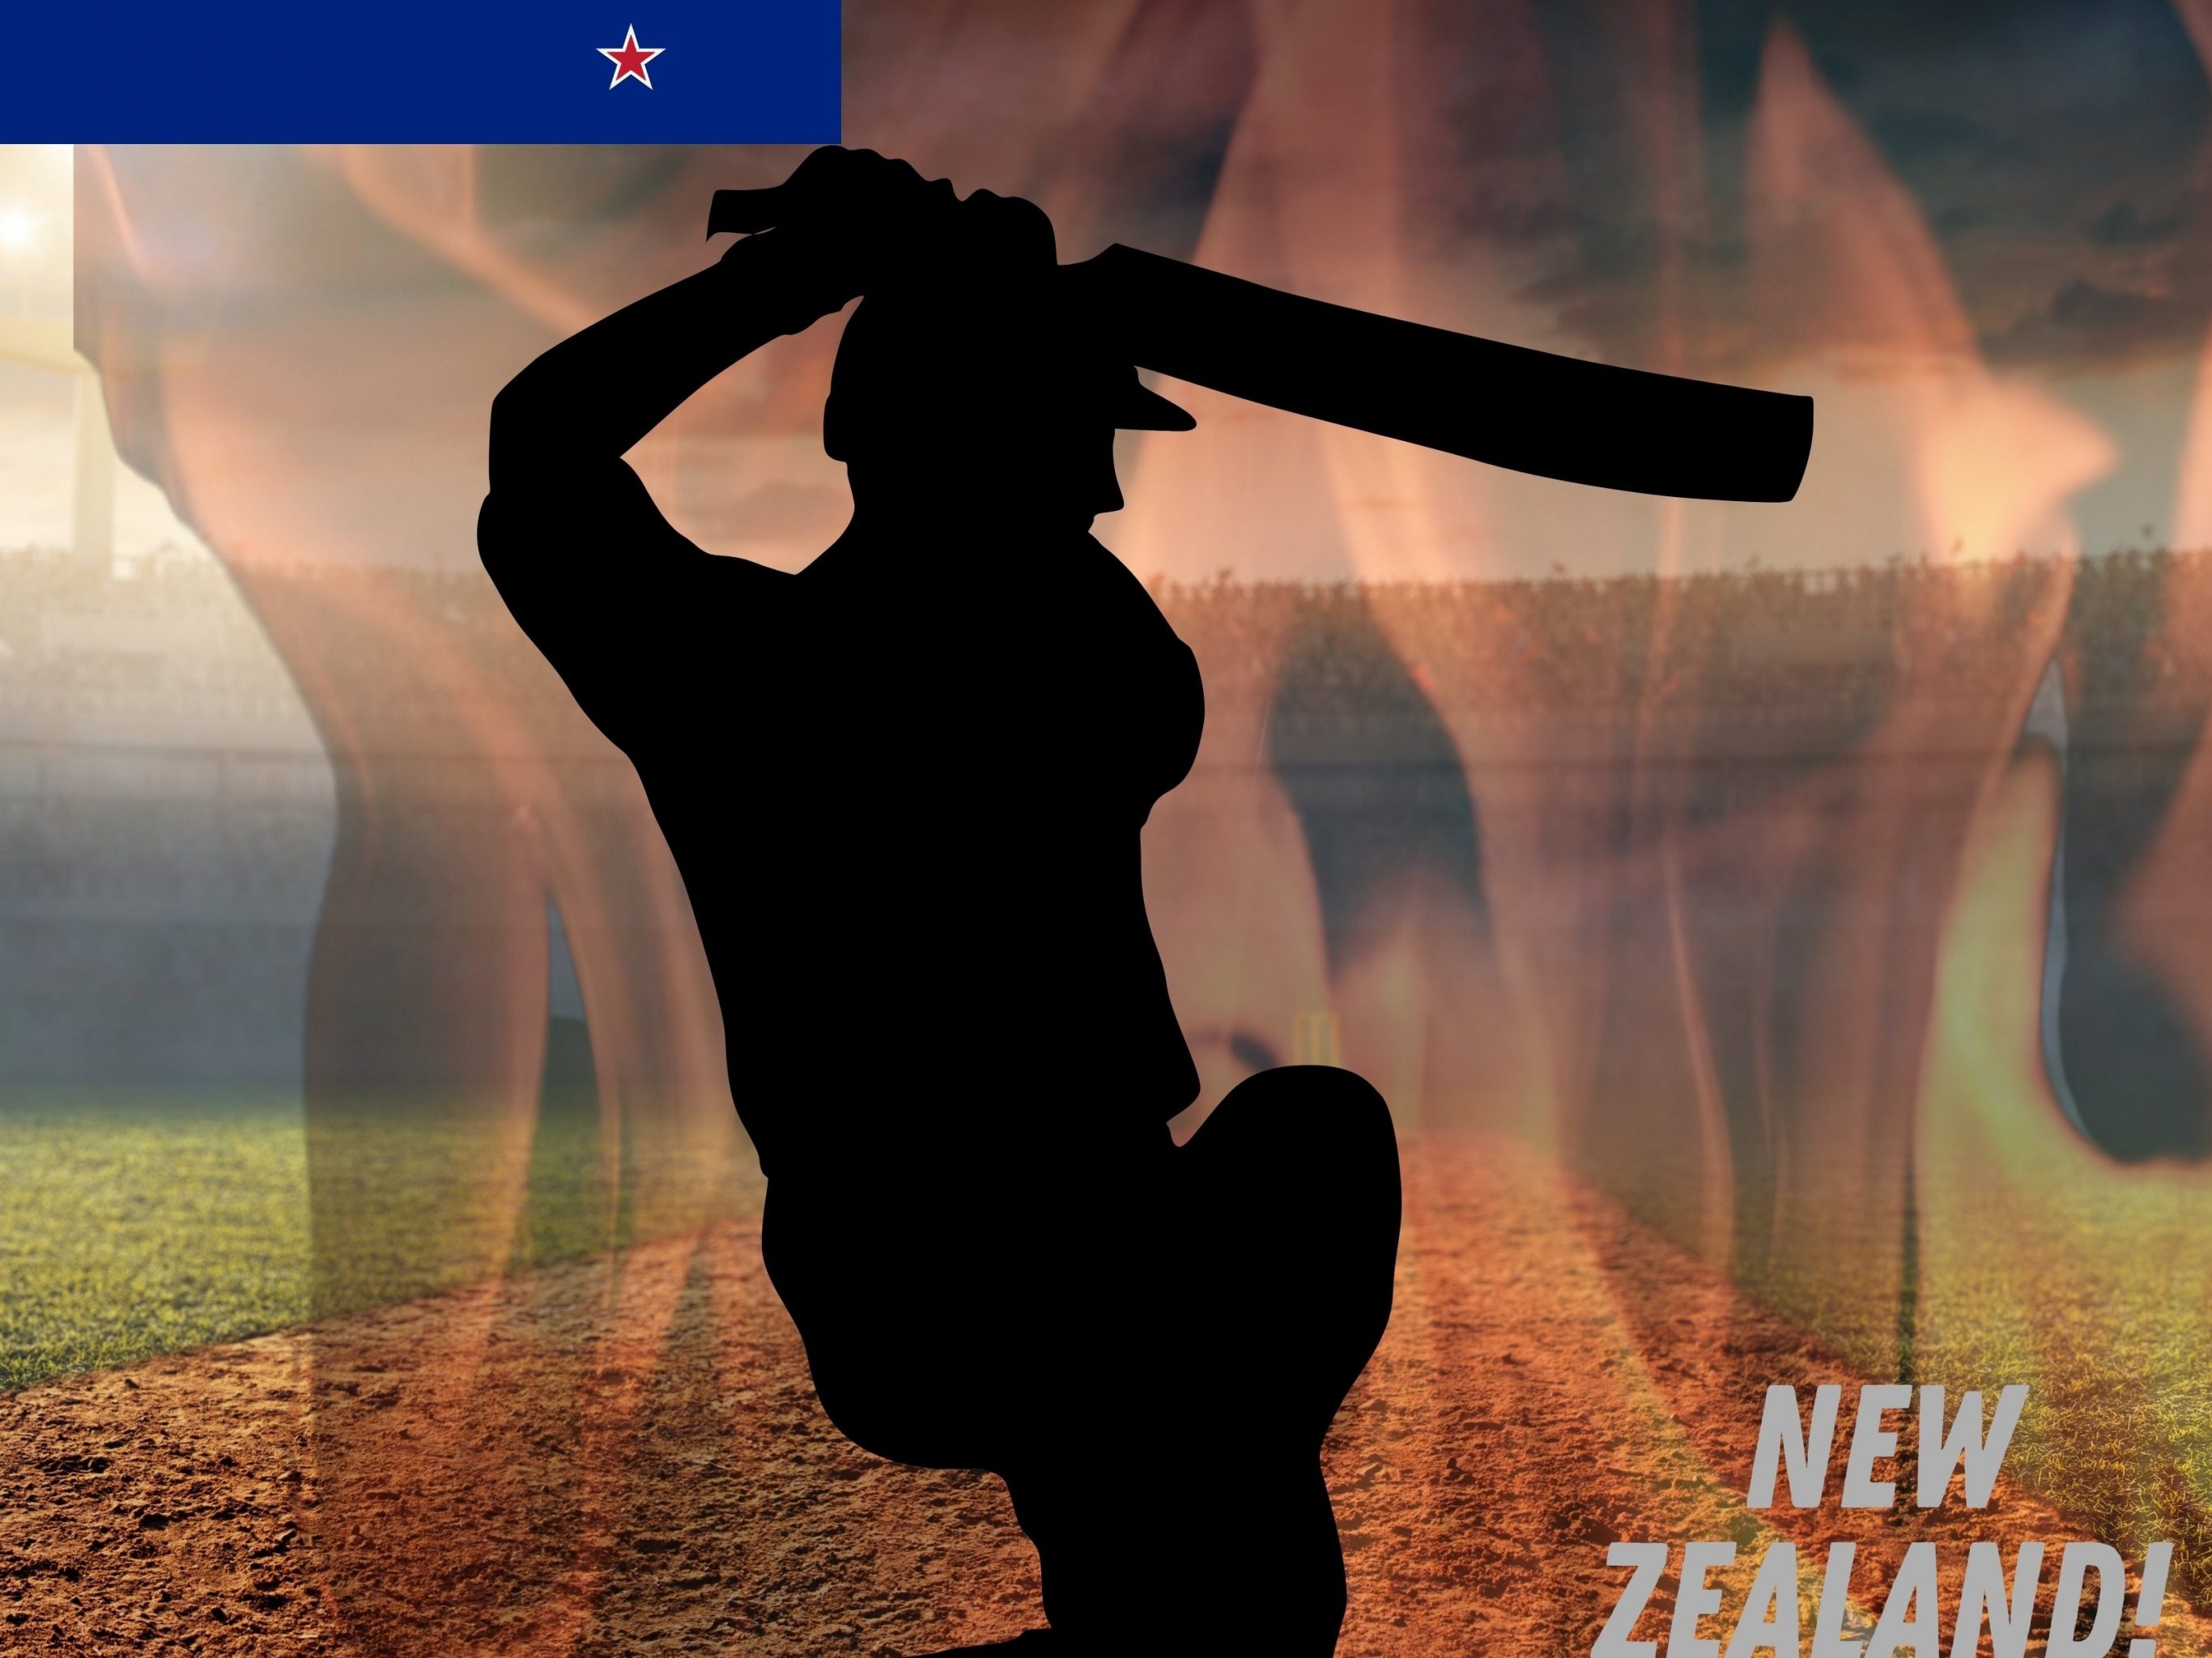 2732x2048 iPad air iPad Pro wallpapers New Zealand Cricket Stadium iPad Wallpaper 2732x2048 pixels resolution